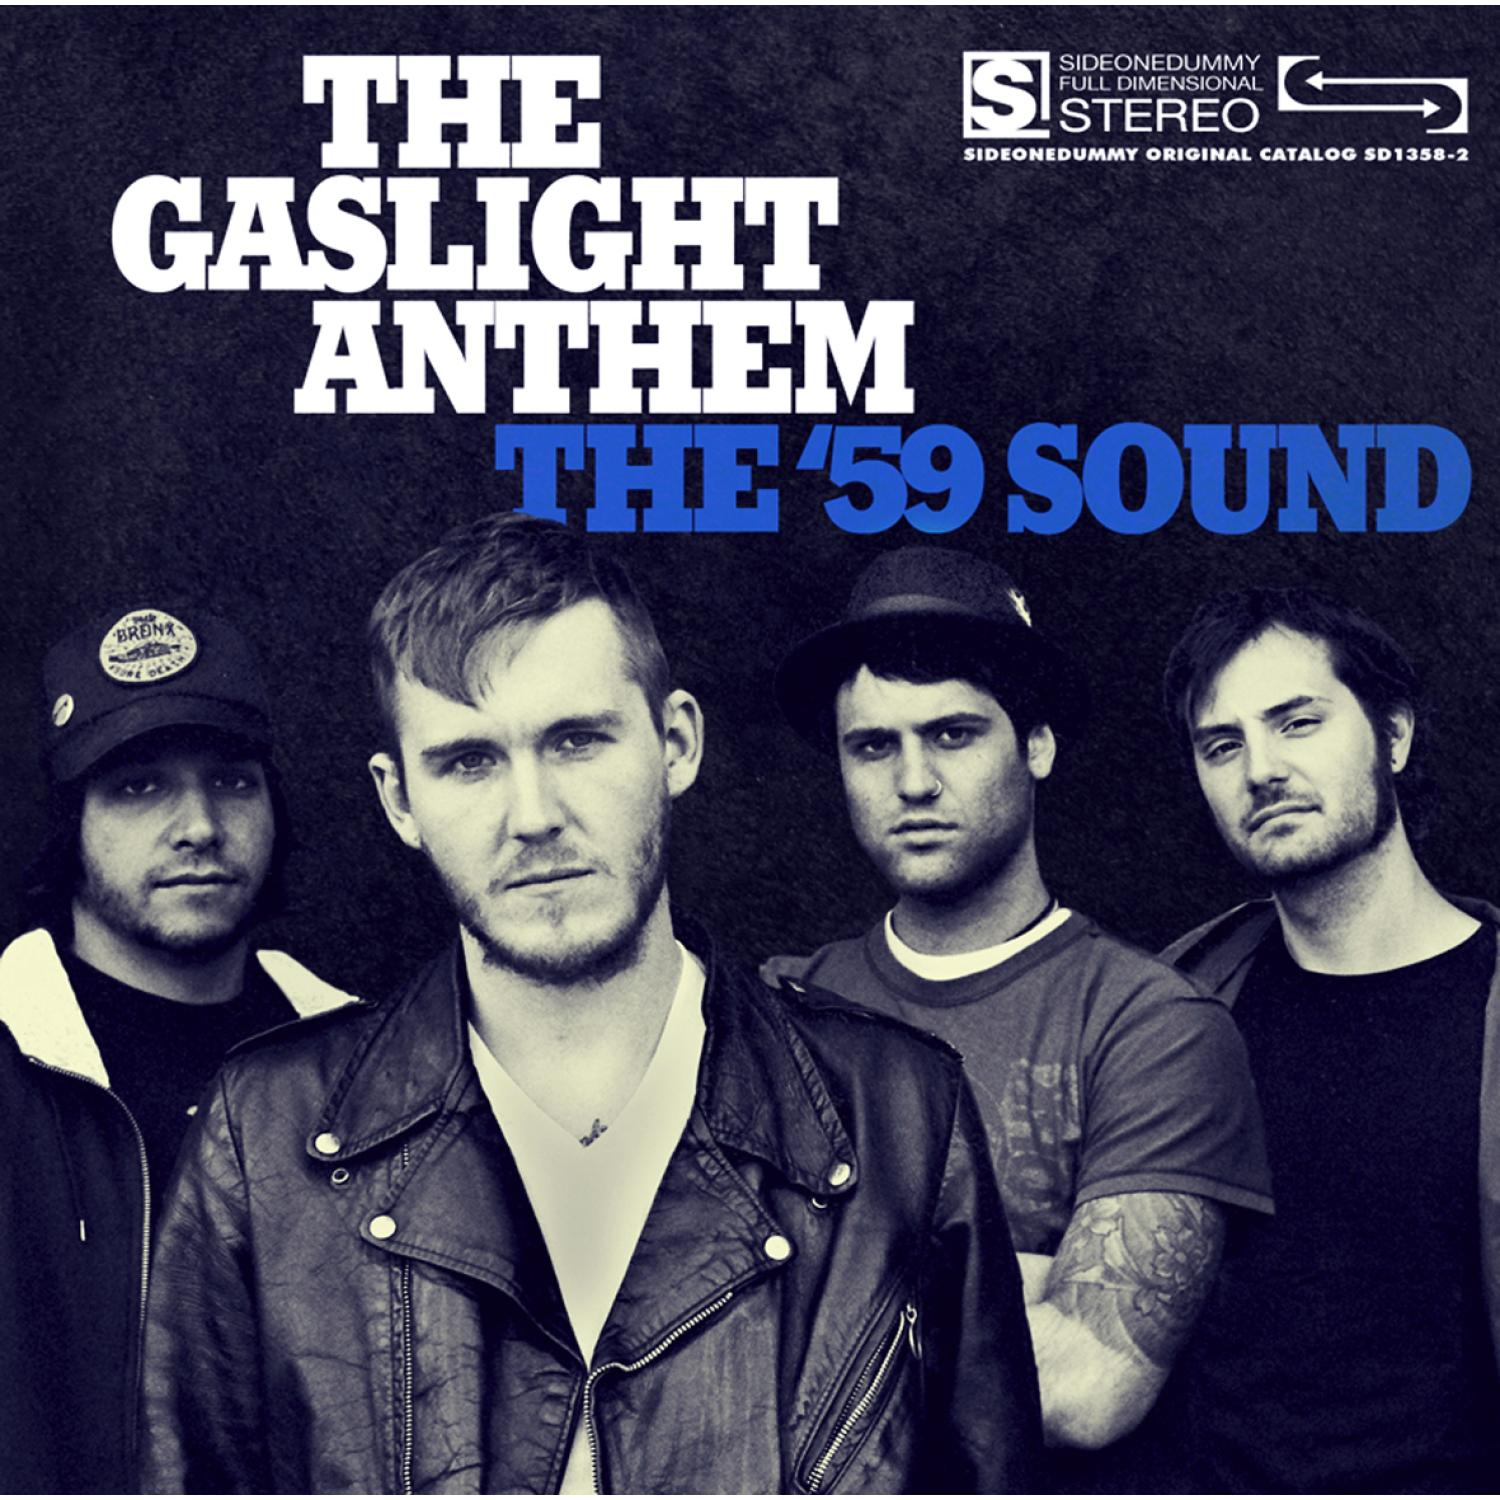 The Gaslight Anthem - The (CD) Sound \'59 